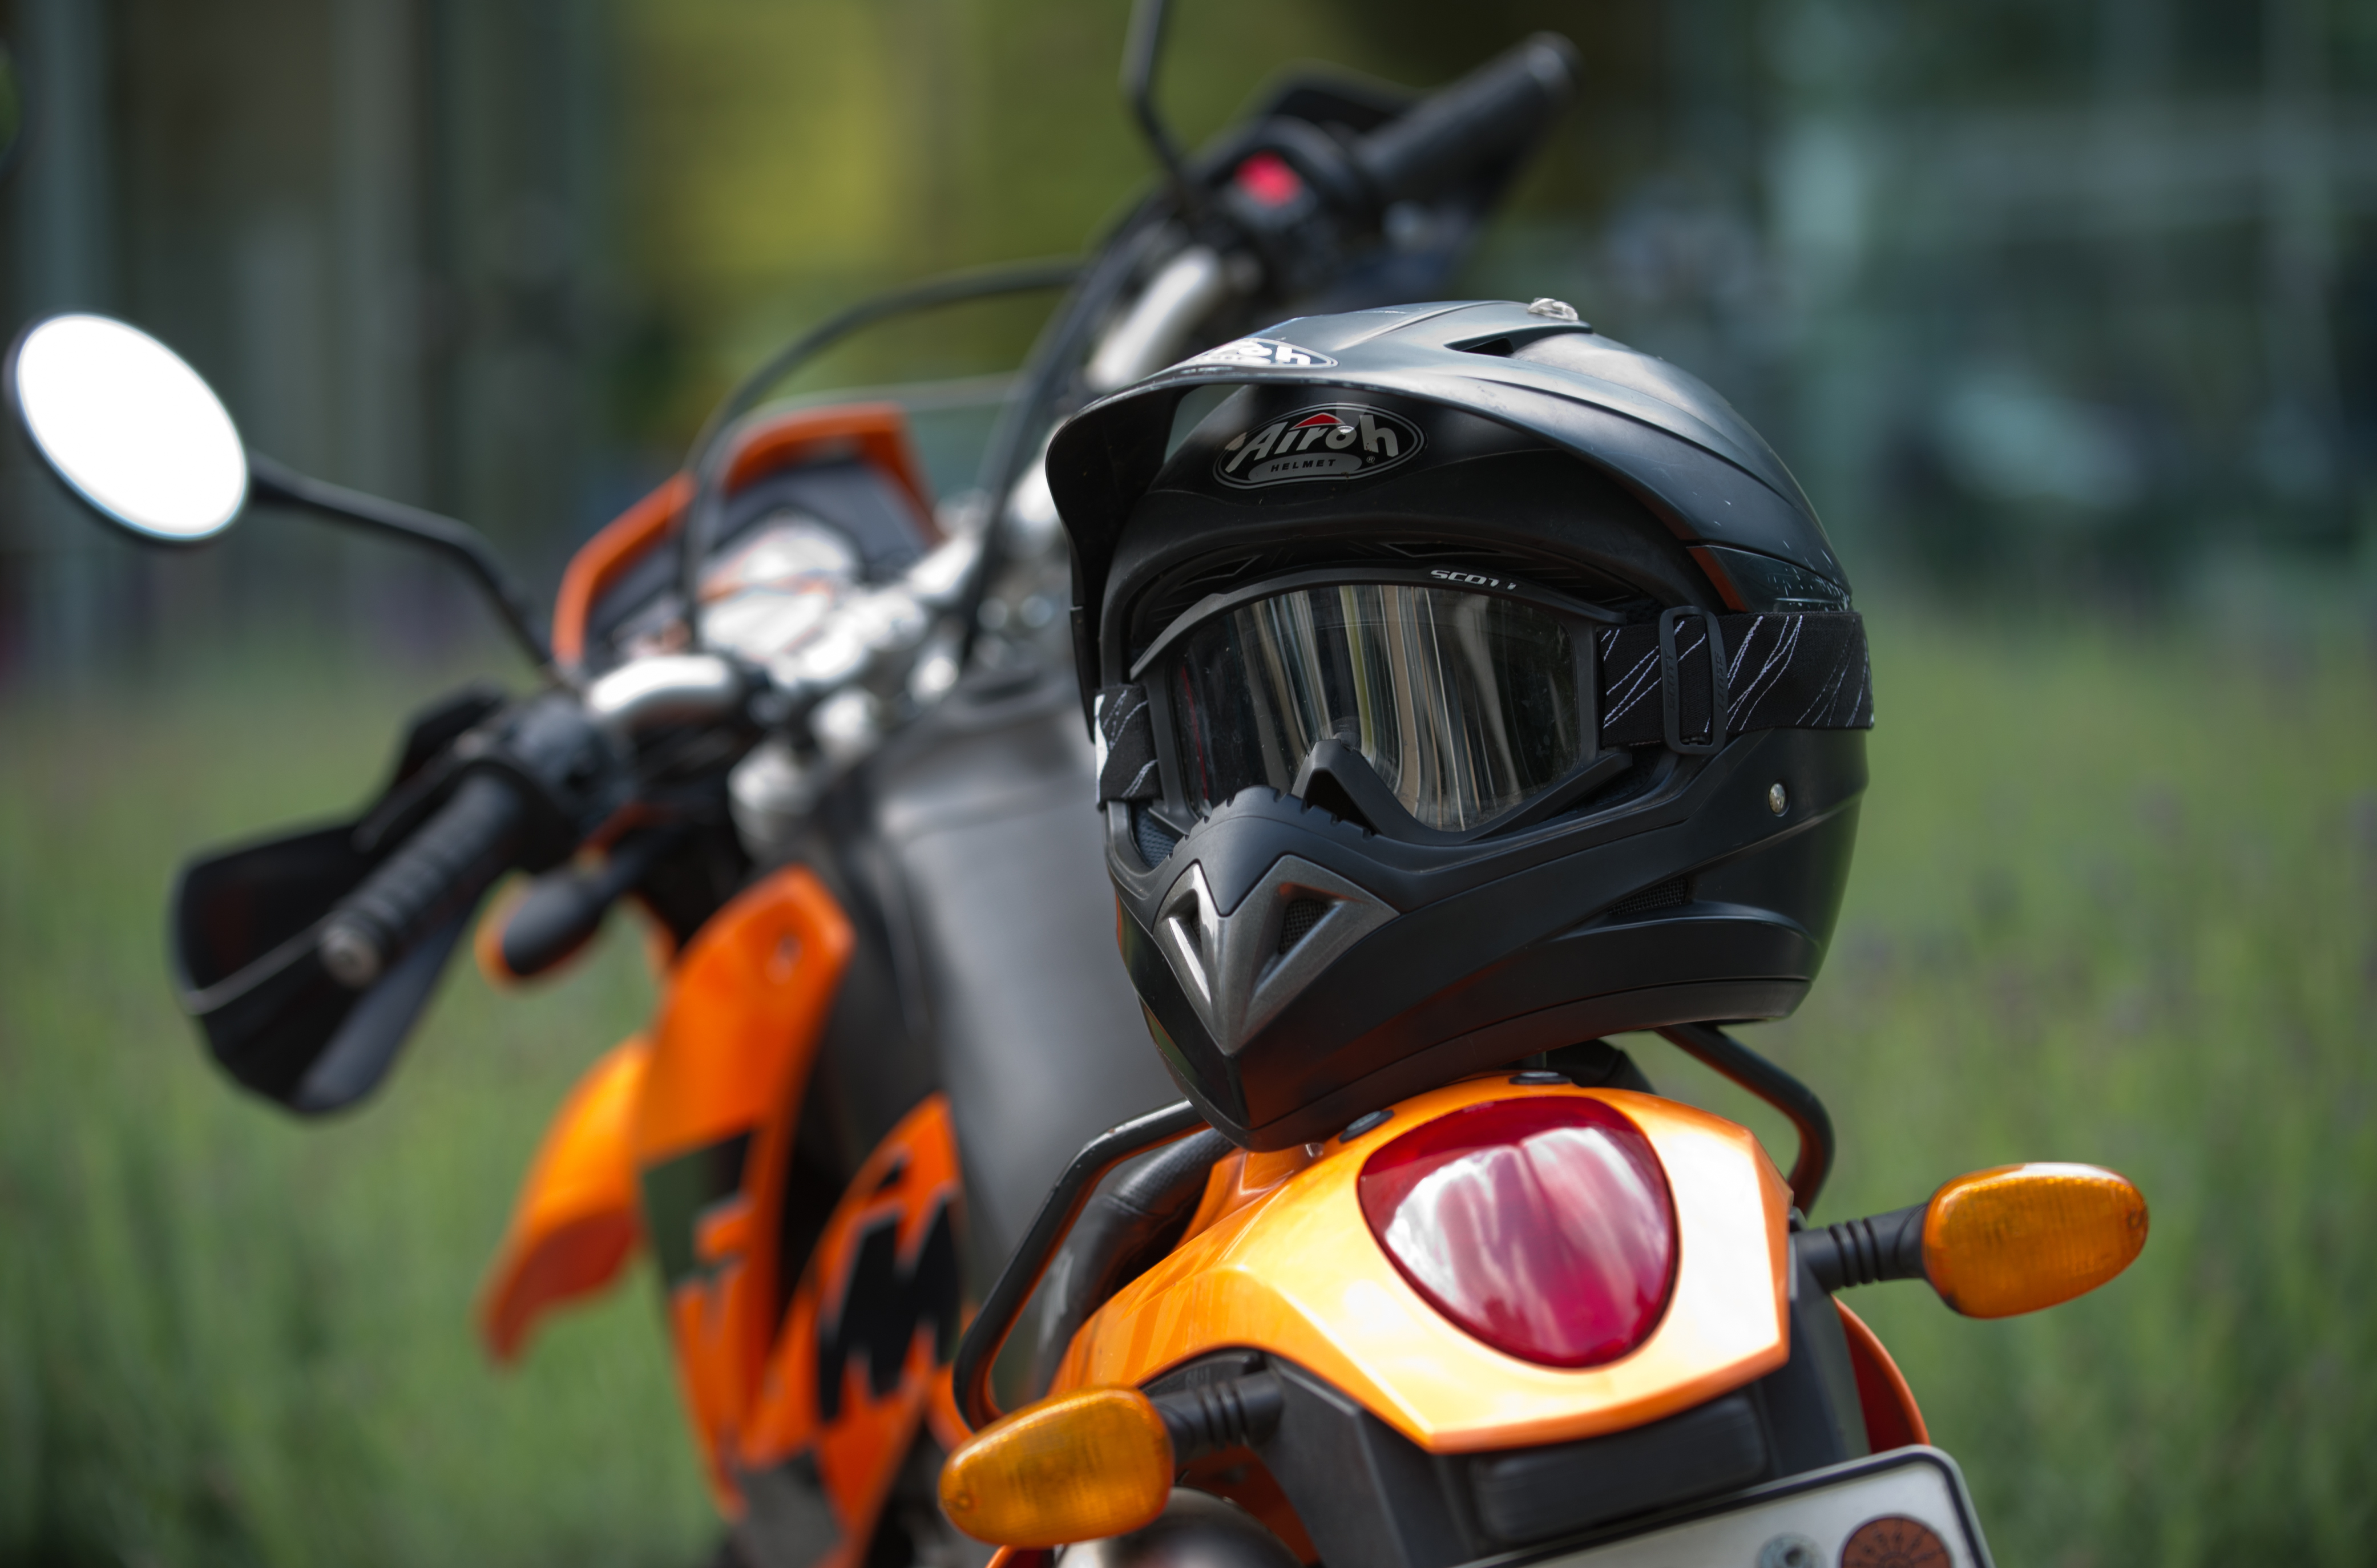 Casco de motos para hombre: ¿cómo elegir cuál comprar?